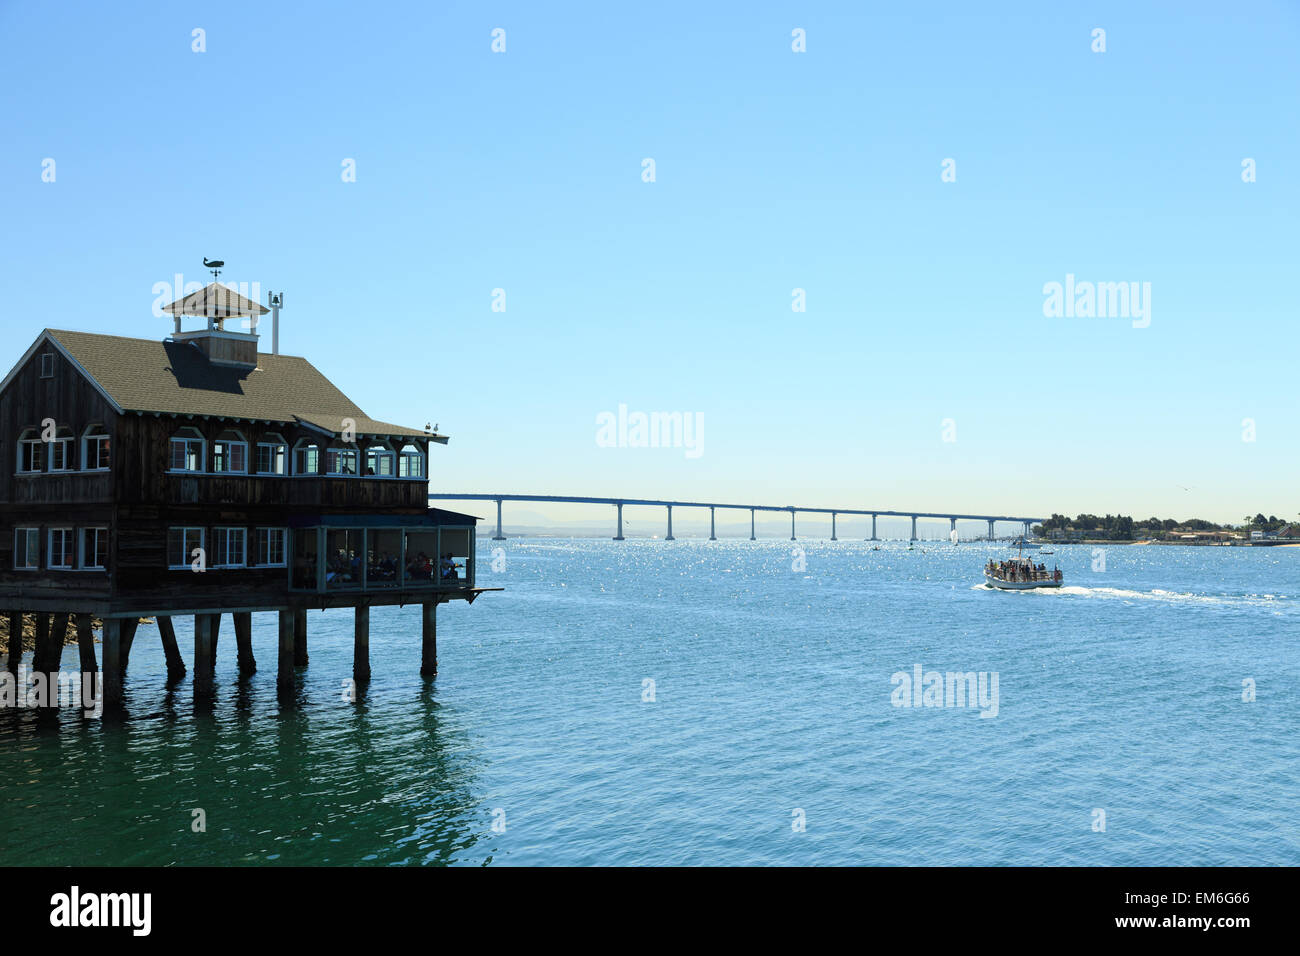 Una fotografia di Pier Cafe in San Diego al Seaport Village. Il San Diego Pier Cafe, un punto di riferimento a San Diego. Foto Stock